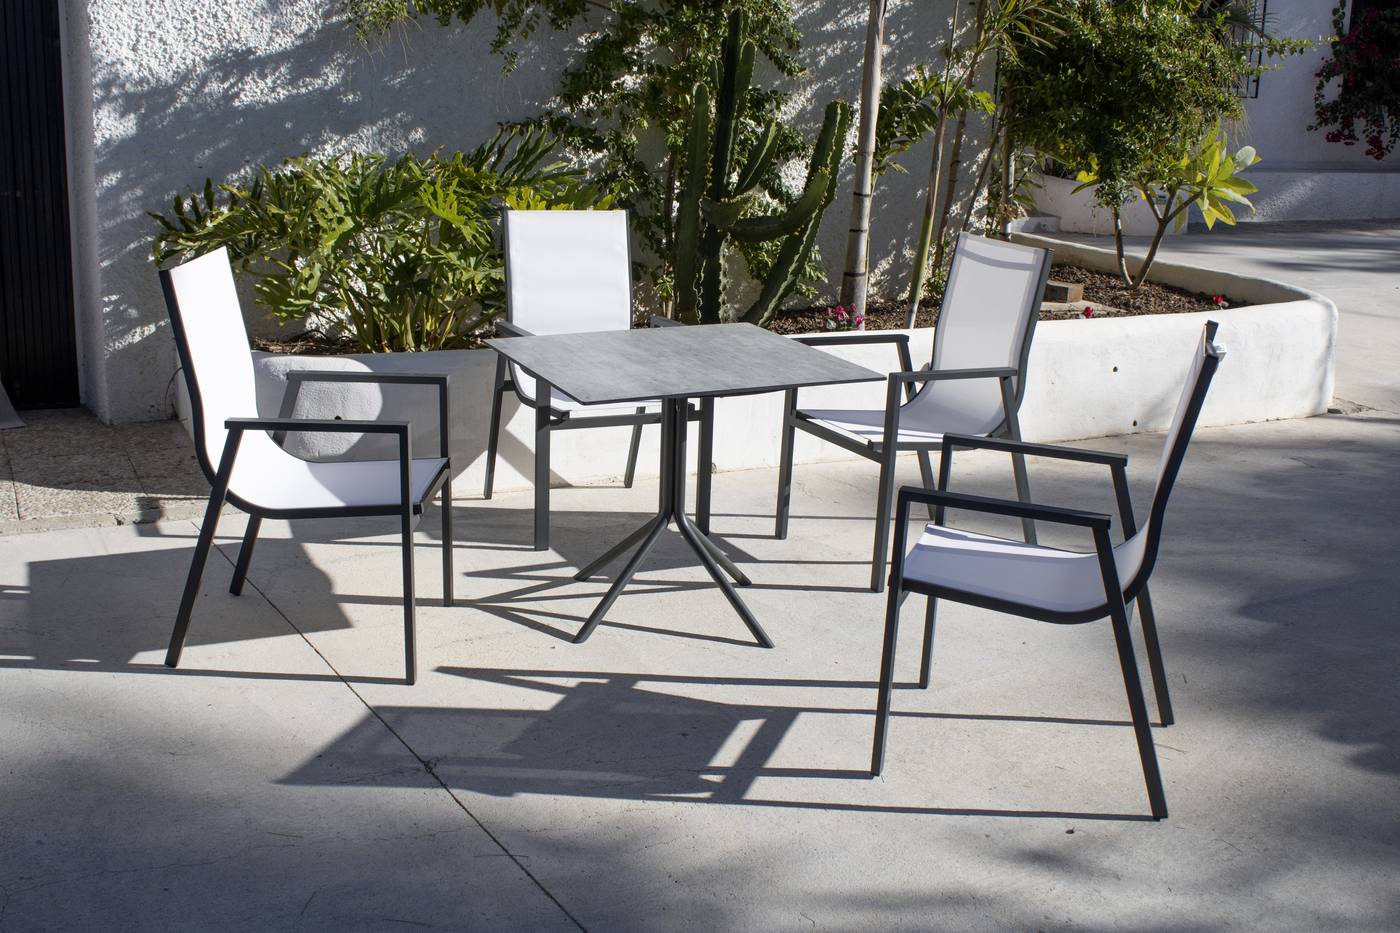 Mesa plegable ▢70 de aluminio y HPL [Mistral] - Mesa cuadrada para jardín o terraza, con patas ensambladas de aluminio y tablero HPL de 70 cm. Disponible en varios colores.